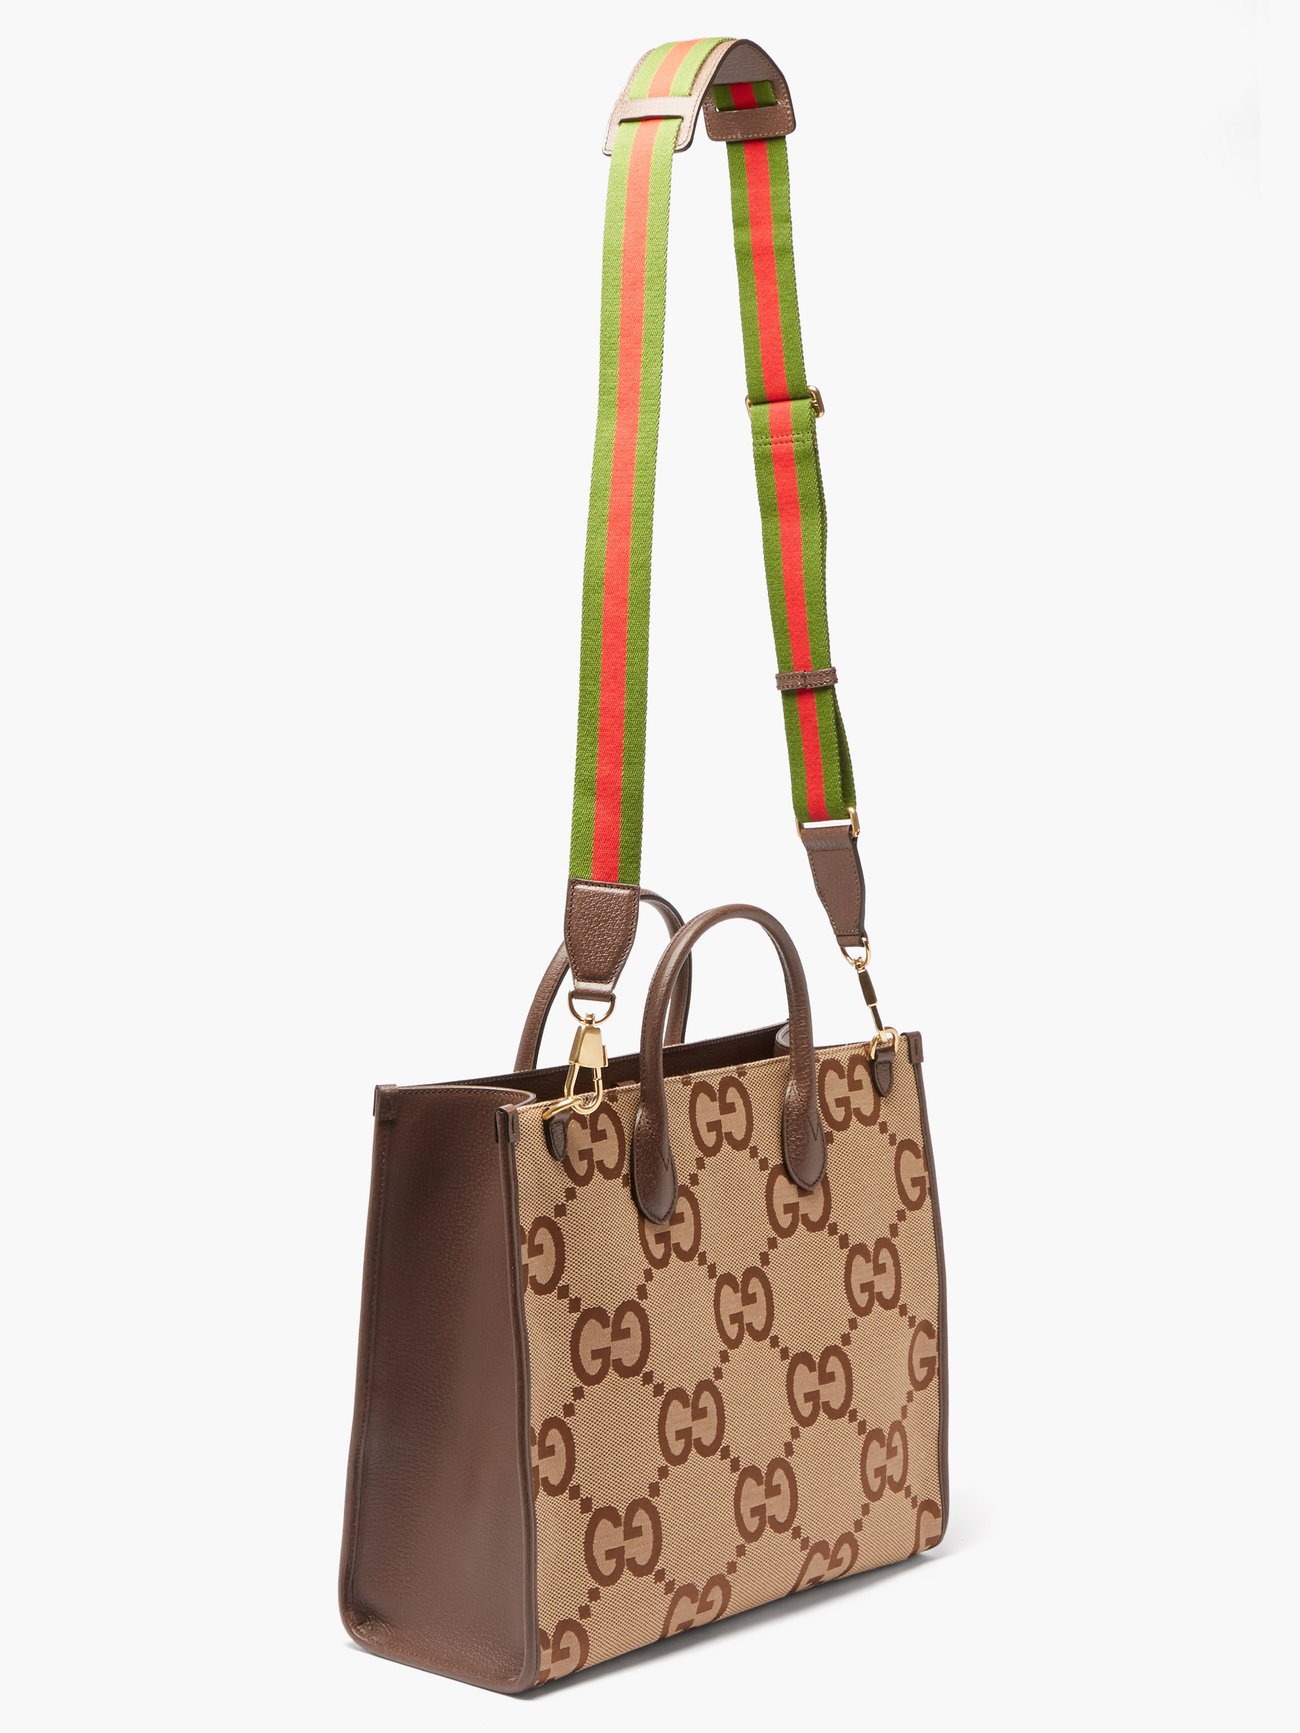 Gucci Jumbo GG Tote Bag, Brown, GG Canvas